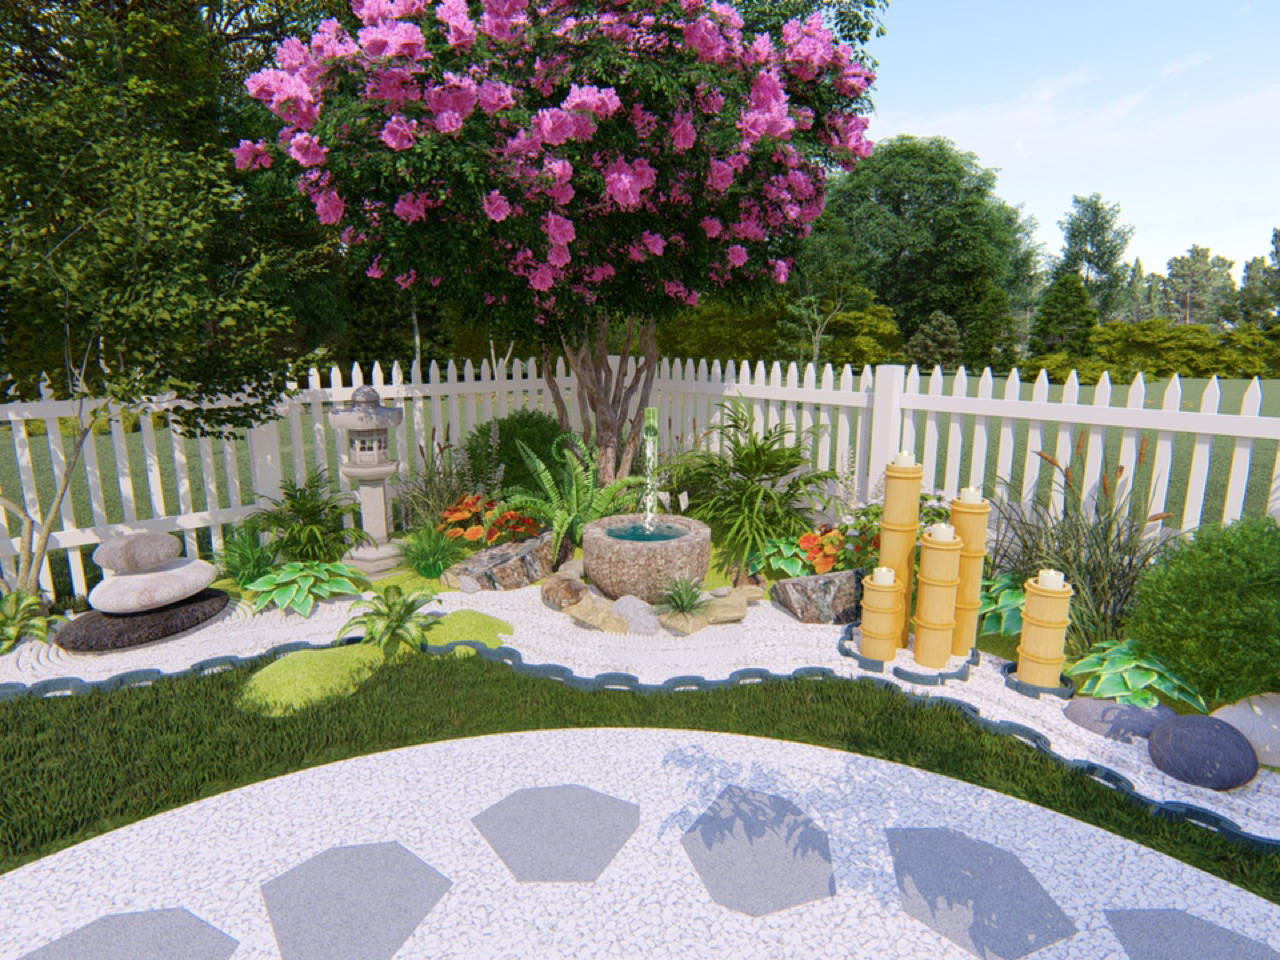 30㎡自建房小花园改造:原来乱七八糟的院子,现在变好看多了!